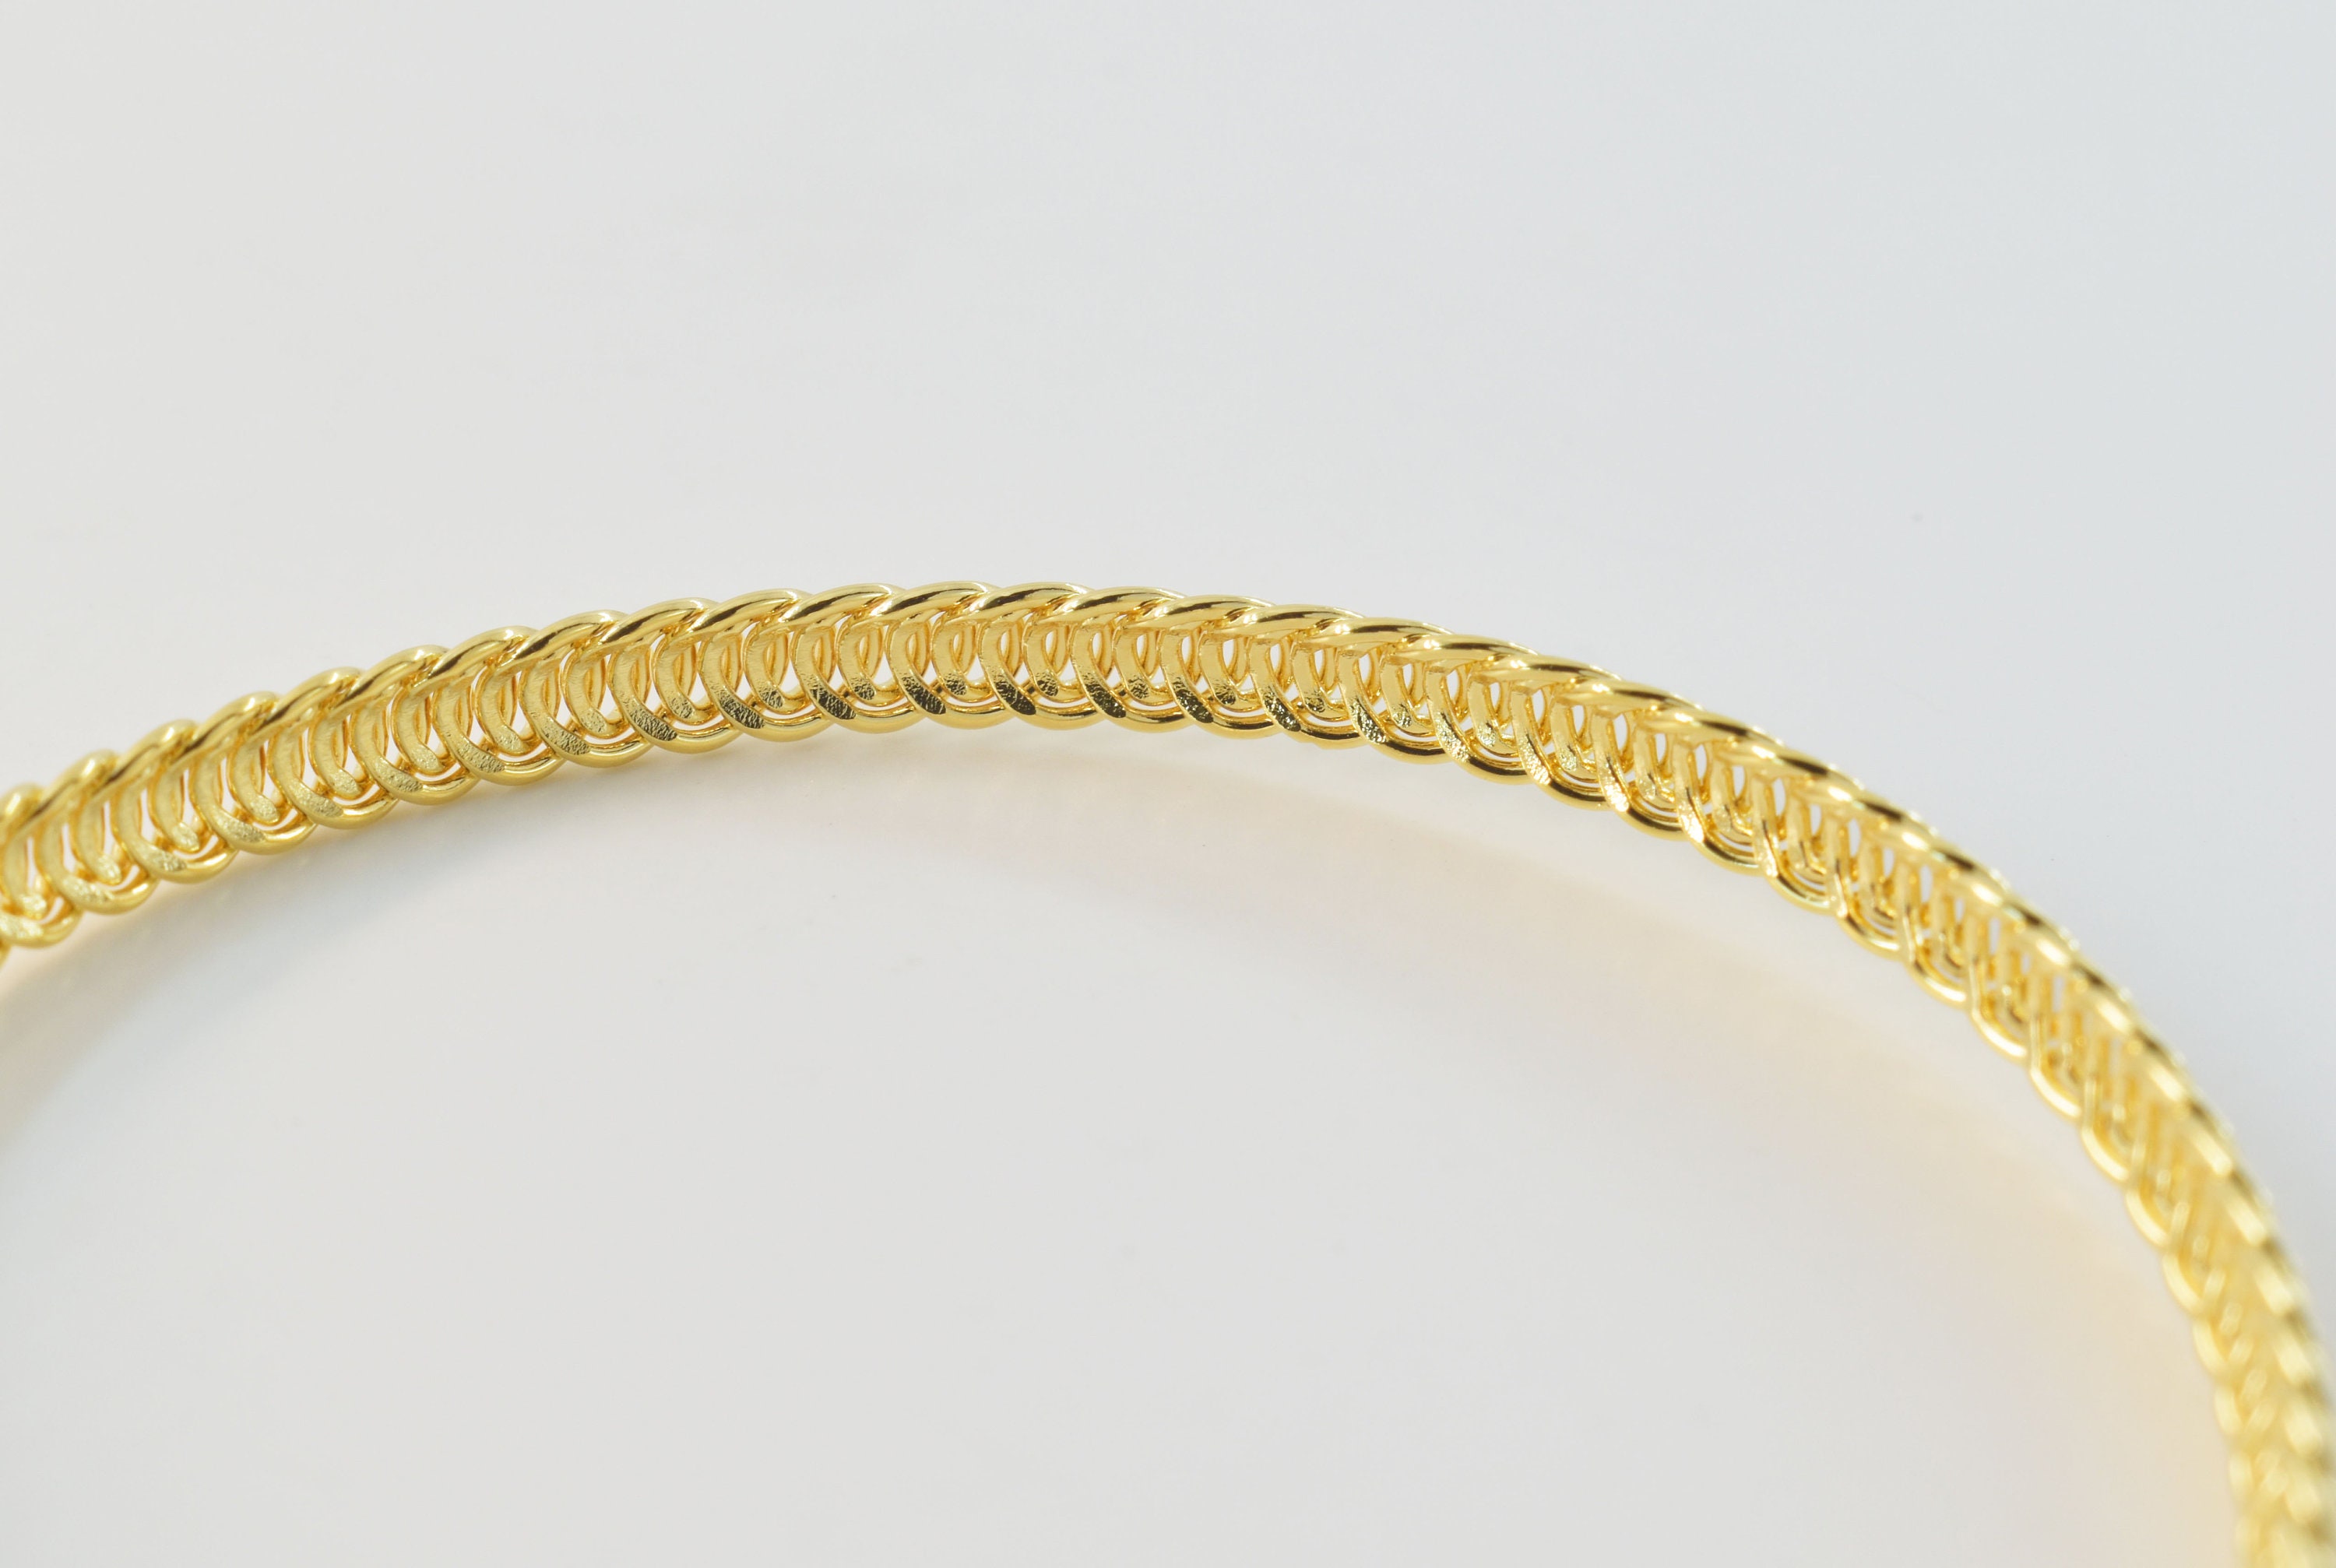 Chain Bracelet, BJ-10G, 1pc, 16K Gold Plated Brass, 19cm Long, 4.5 